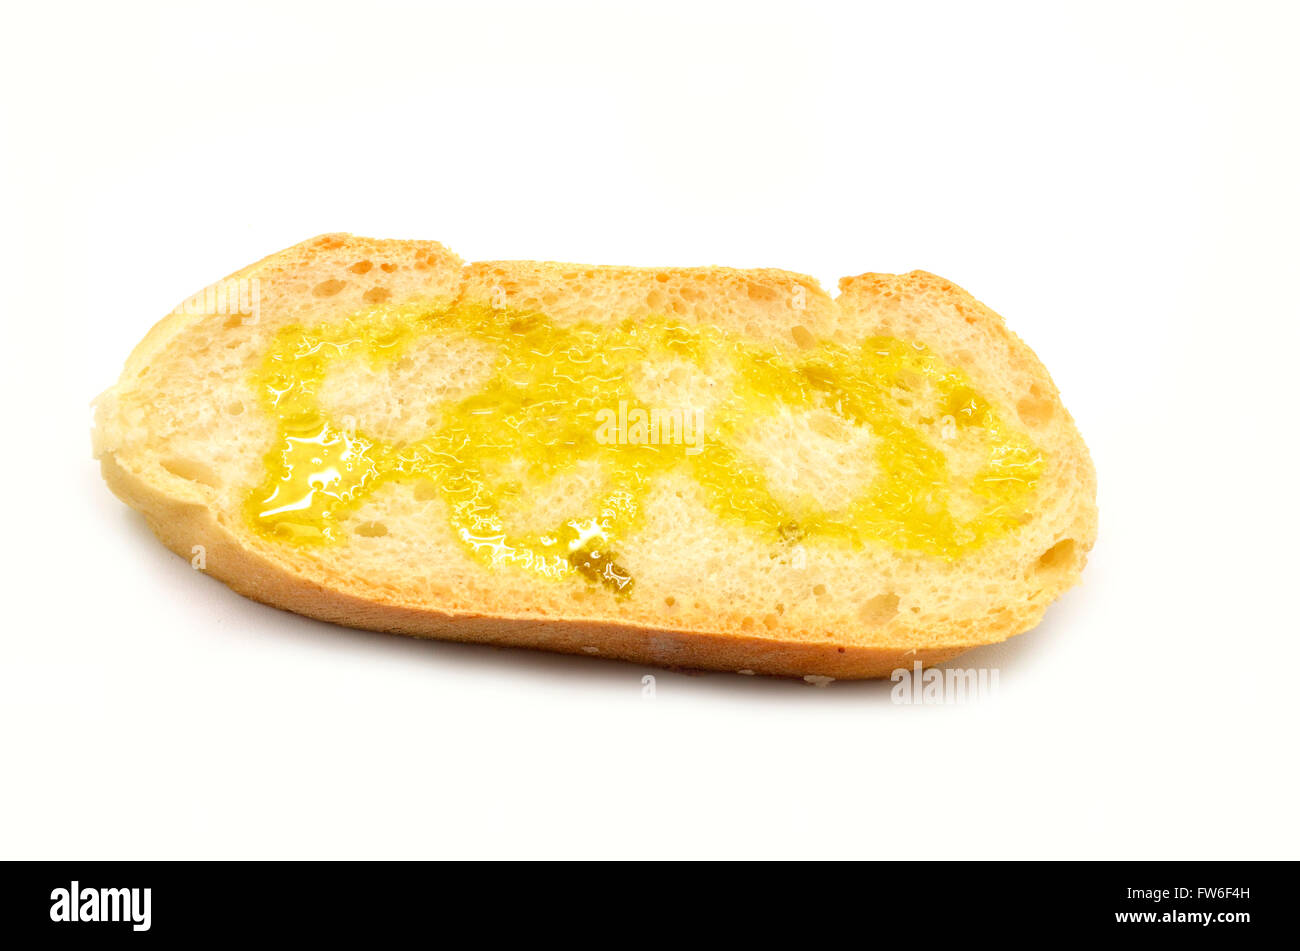 Rebanada de pan con aceite de oliva virgen extra Foto de stock